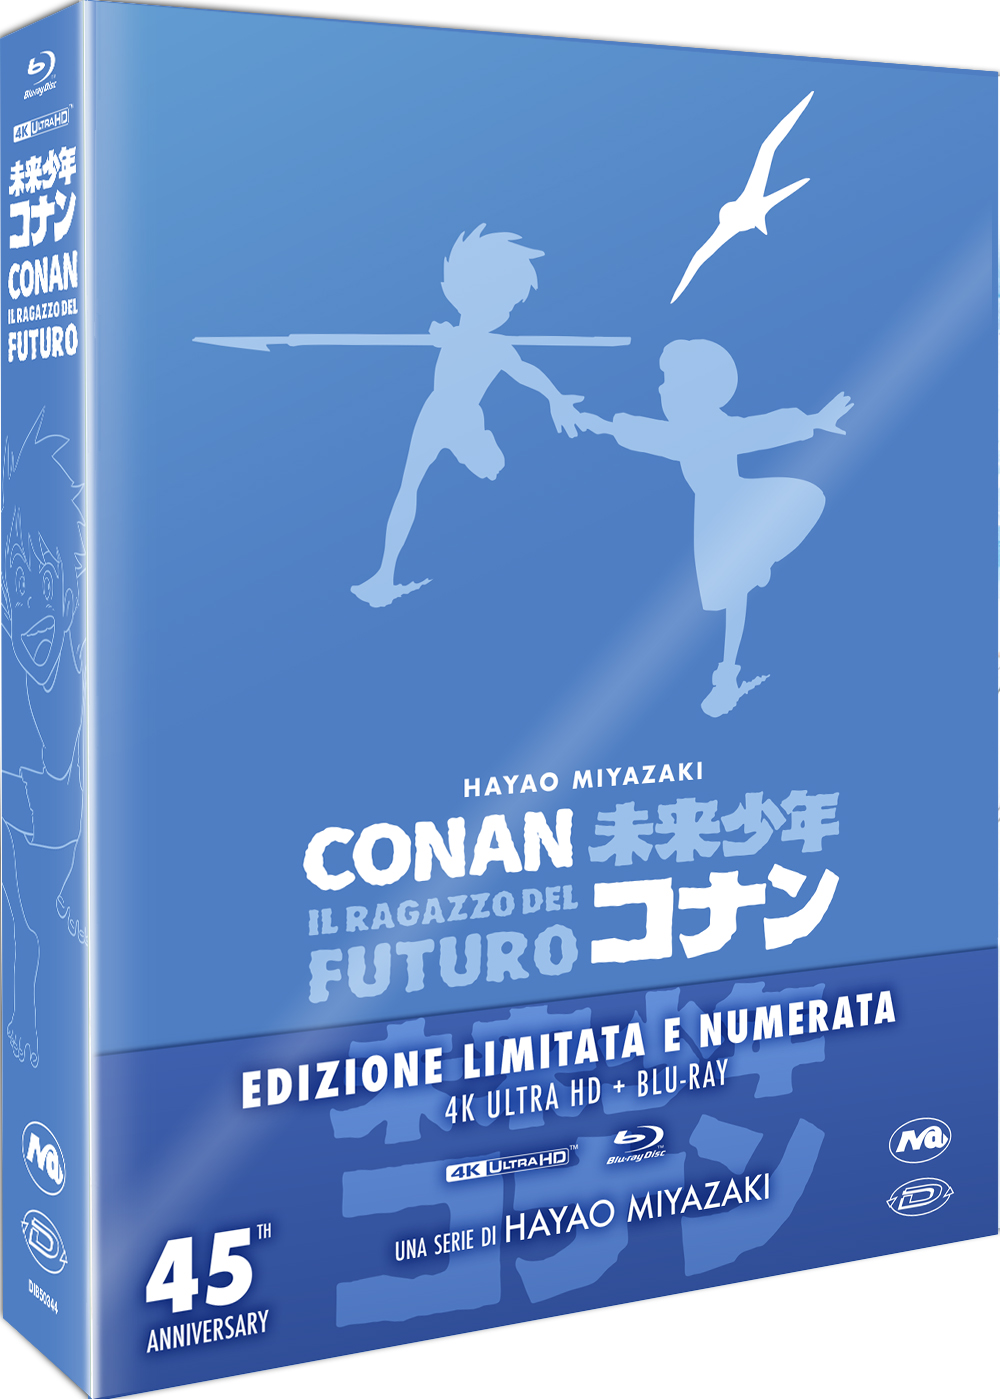 Blu-Ray 4K Uhd Conan, Il Ragazzo Del Futuro (45 Anniversary 4K Edition) (Eps.01-26) (4 4K Ultra Hd+ 4 Blu-Ray) NUOVO SIGILLATO, EDIZIONE DEL 13/12/2023 SUBITO DISPONIBILE